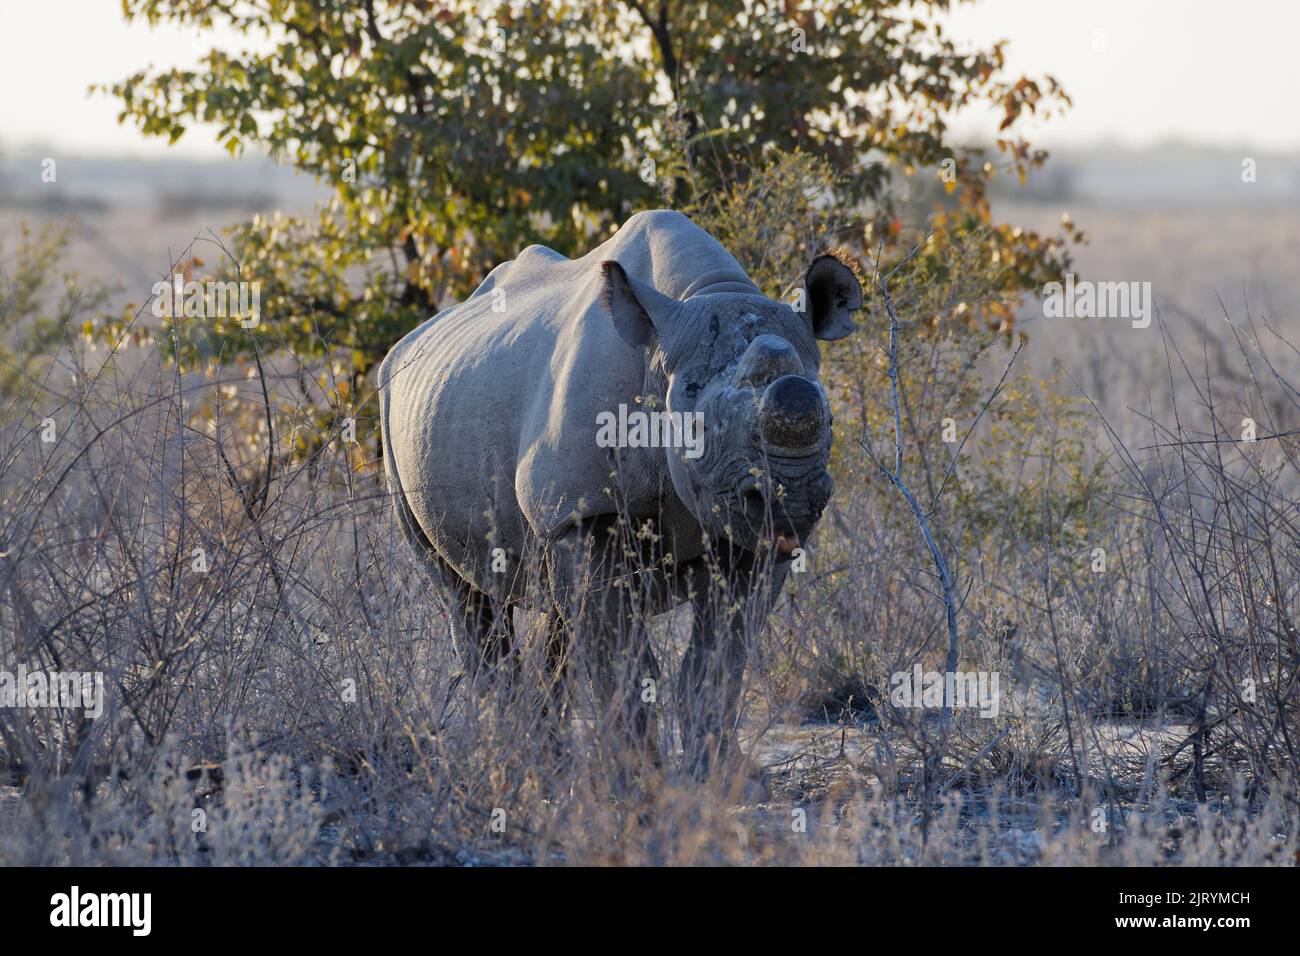 Rhinocéros noirs (Diceros bicornis) avec cornes sciées, mesure anti-braconnage, recherche de nourriture pour adultes, Parc national d'Etosha, Namibie, Afrique Banque D'Images